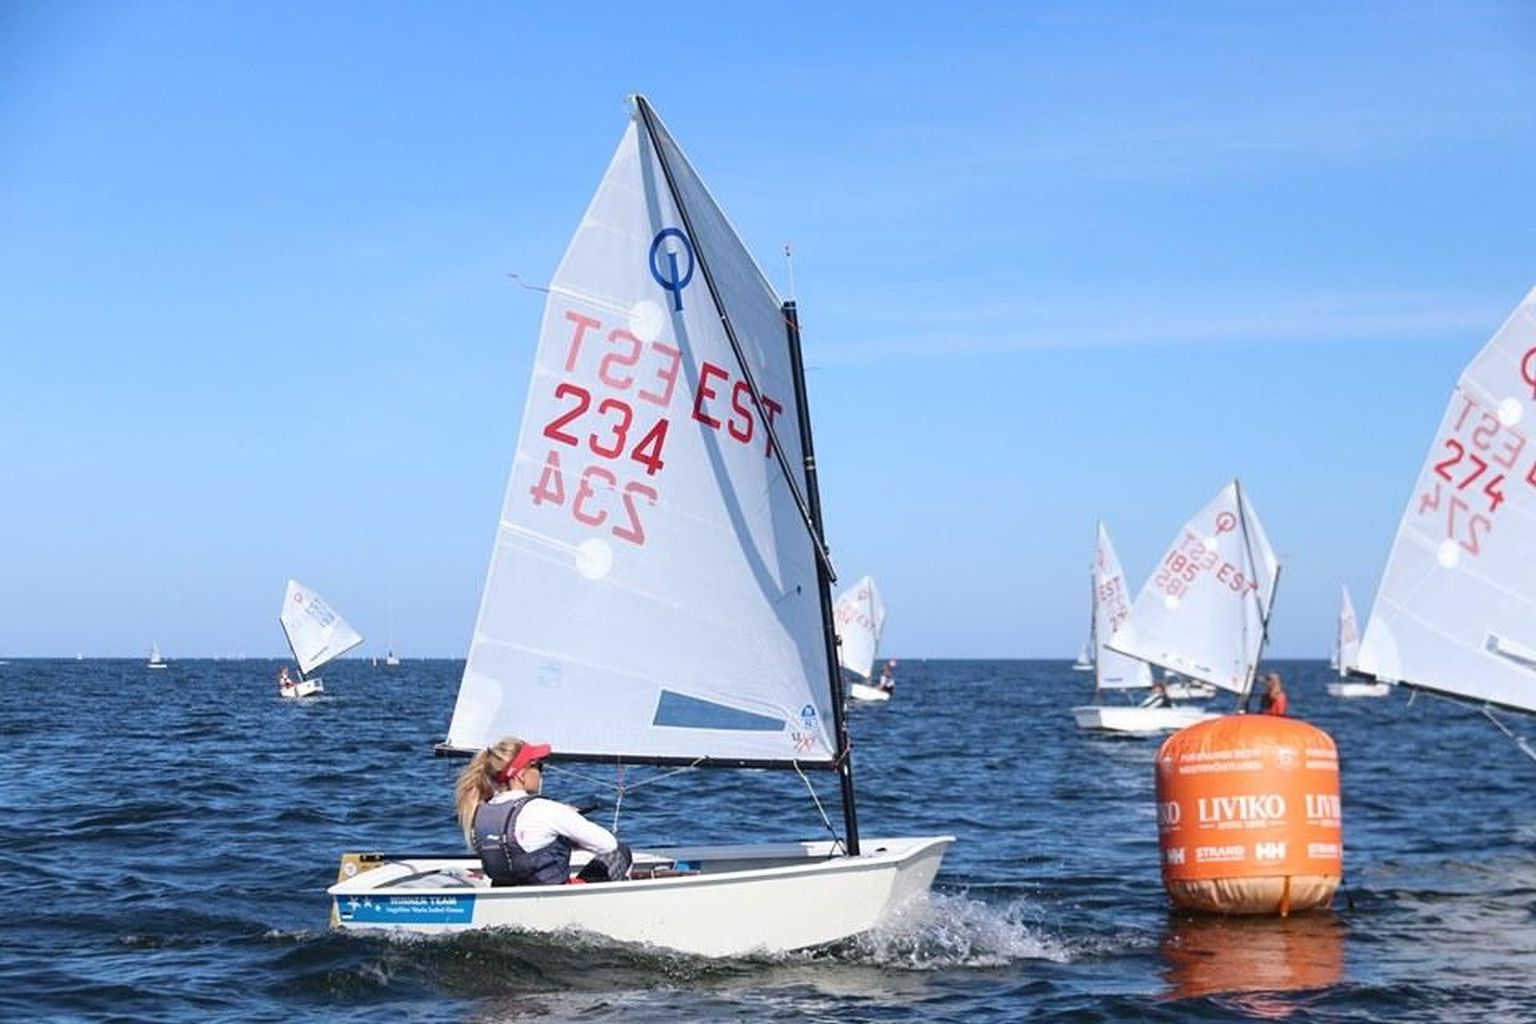 Viimast hooaega Optimistil purjetav Angeliina Maria Isabel Õunap võitis Lohusalu regatil teise auhinna.